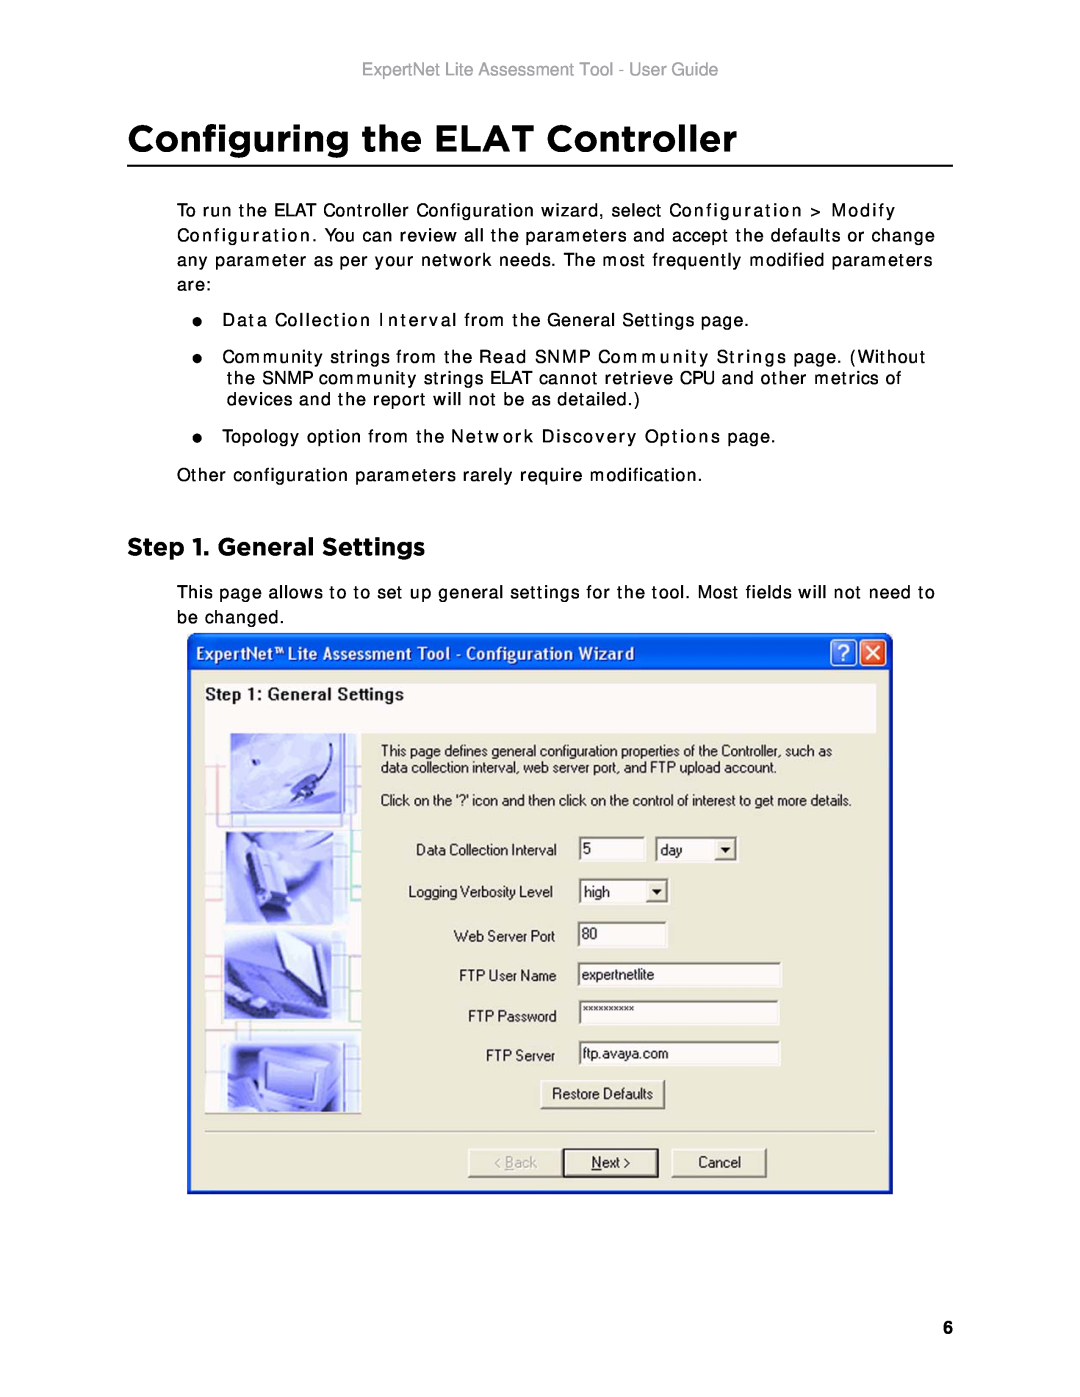 Avaya manual Configuring the ELAT Controller, General Settings, ExpertNet Lite Assessment Tool - User Guide 